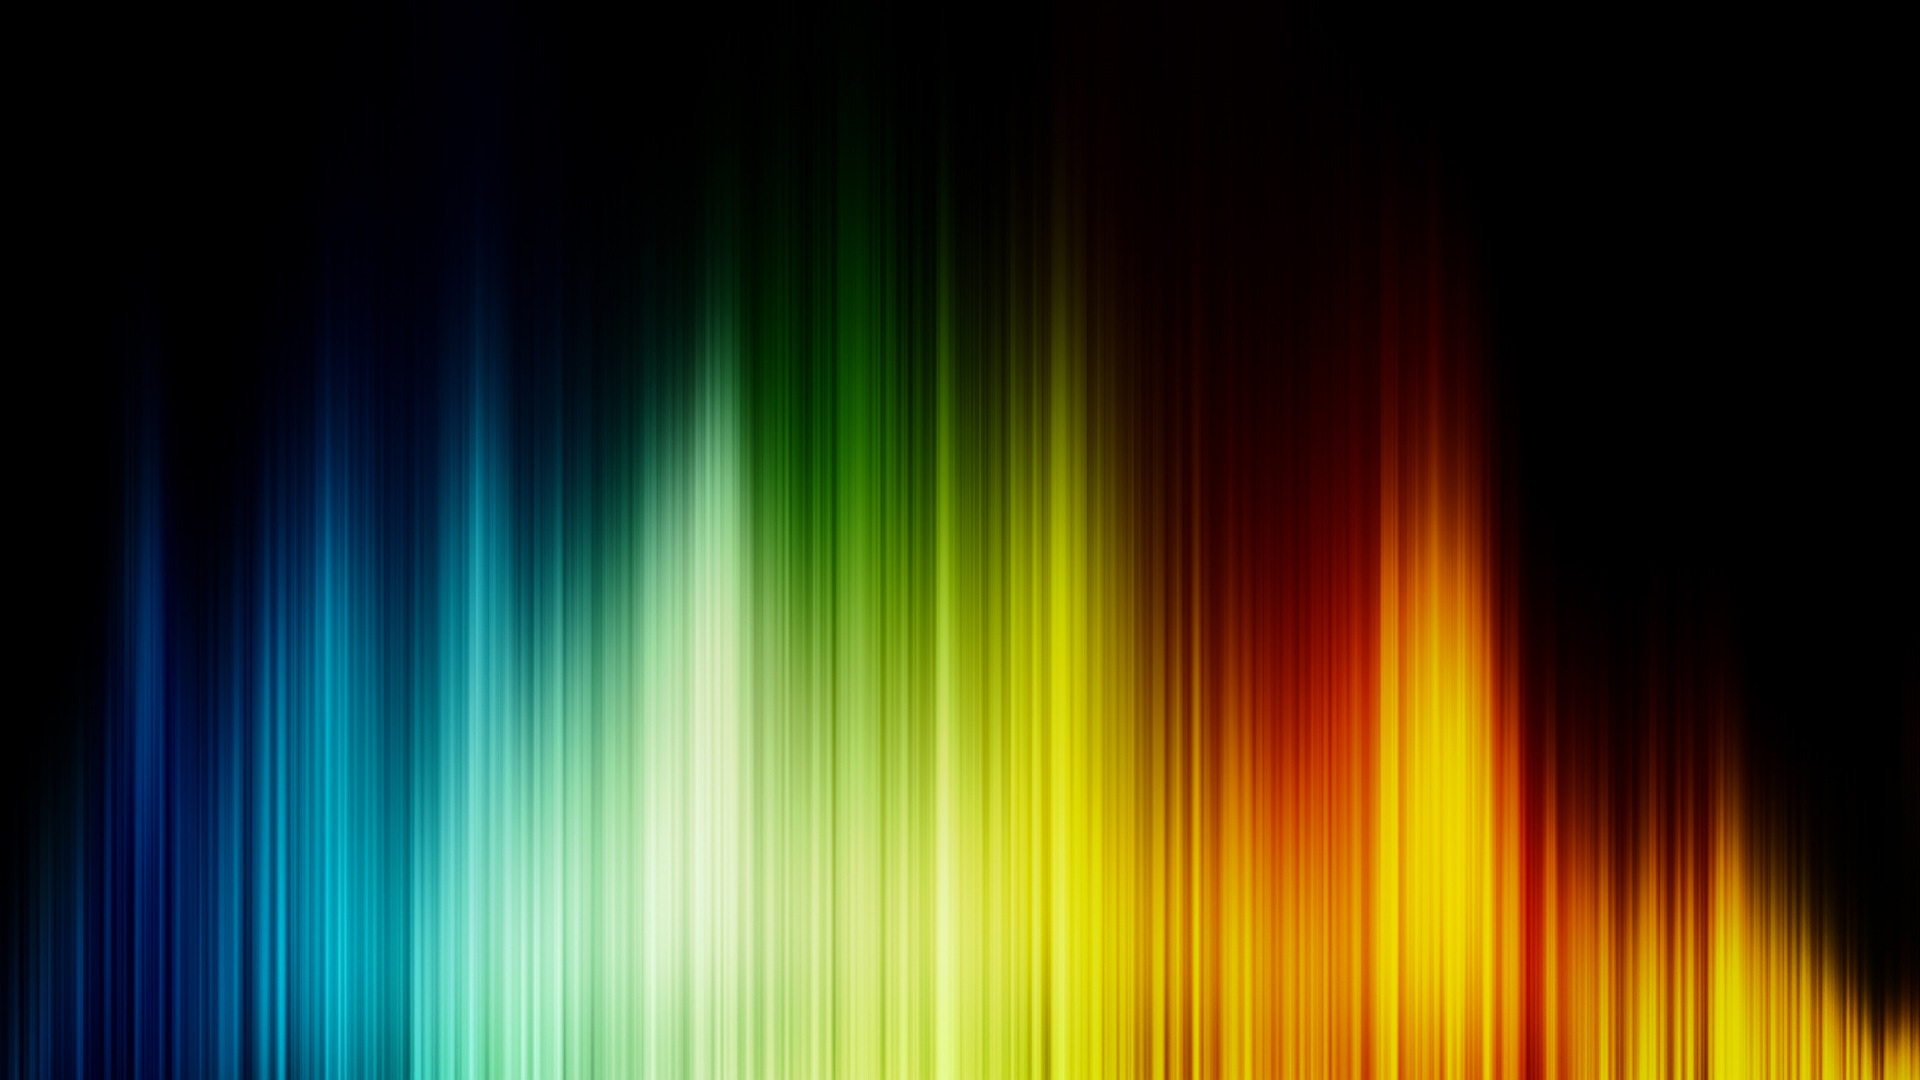 ecualizador de pantalla en vivo,verde,azul,ligero,amarillo,naranja